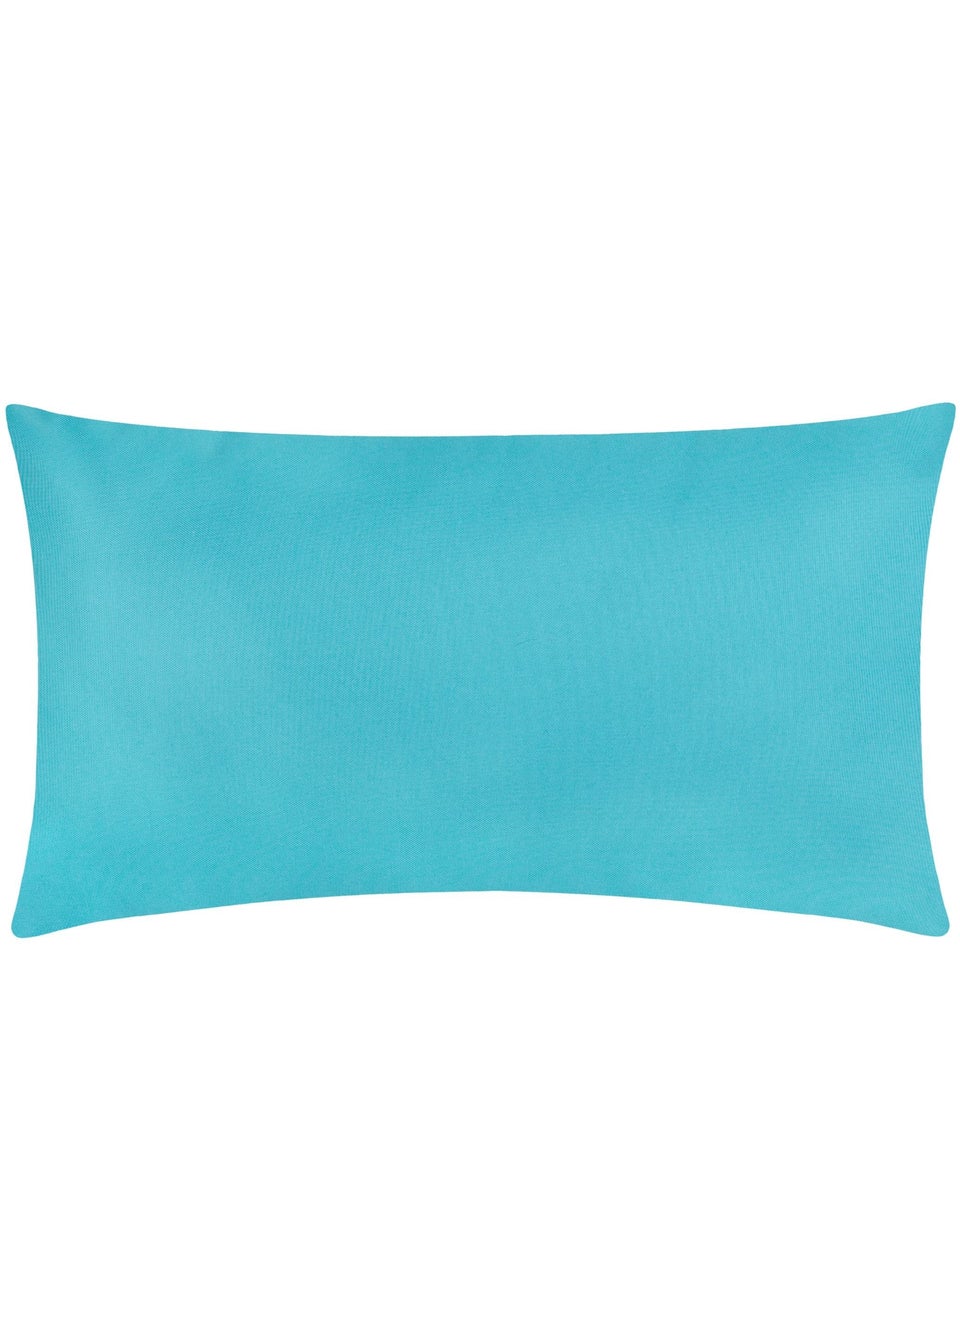 furn. Blue Happy Hour Filled Outdoor Cushions (30cm x 50cm x 8cm)